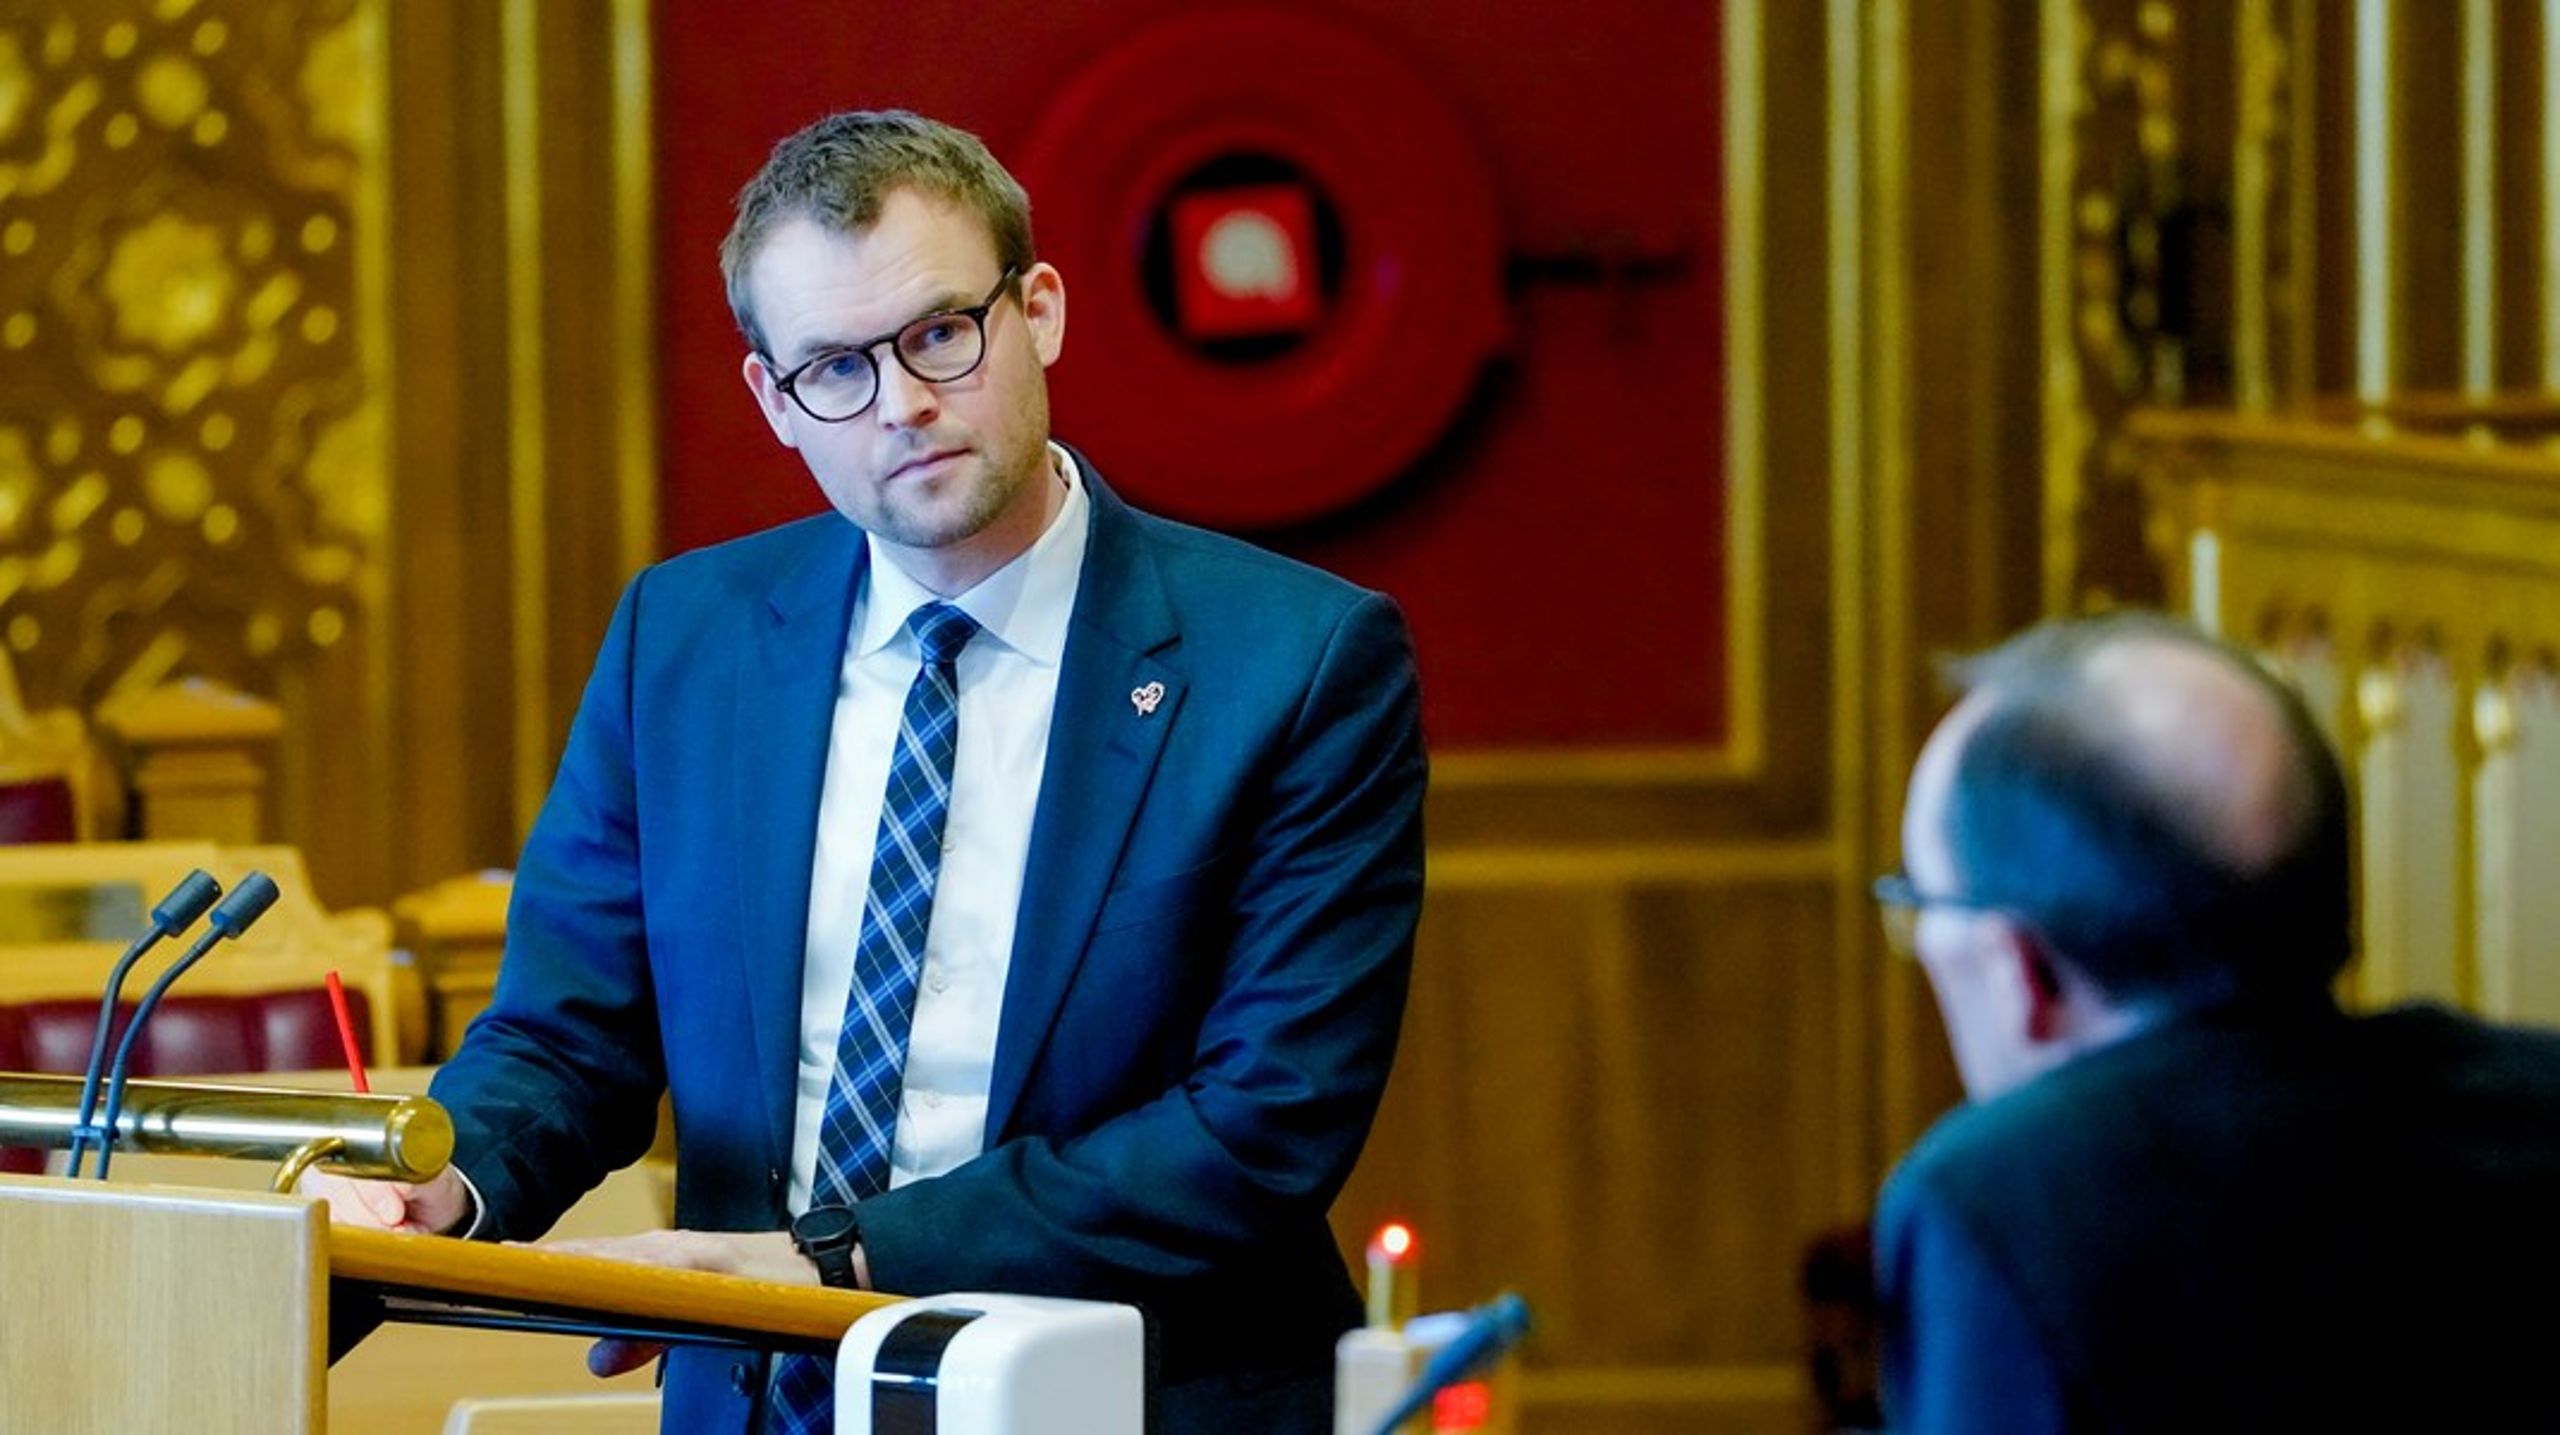 Helse er ett av satsingsområdene KrFs finanspolitiske talsperson, Kjell Ingolf Ropstad, pekte på i partiets alternative statsbudsjett. Her er han fotografert i spørretimen på Stortinget.